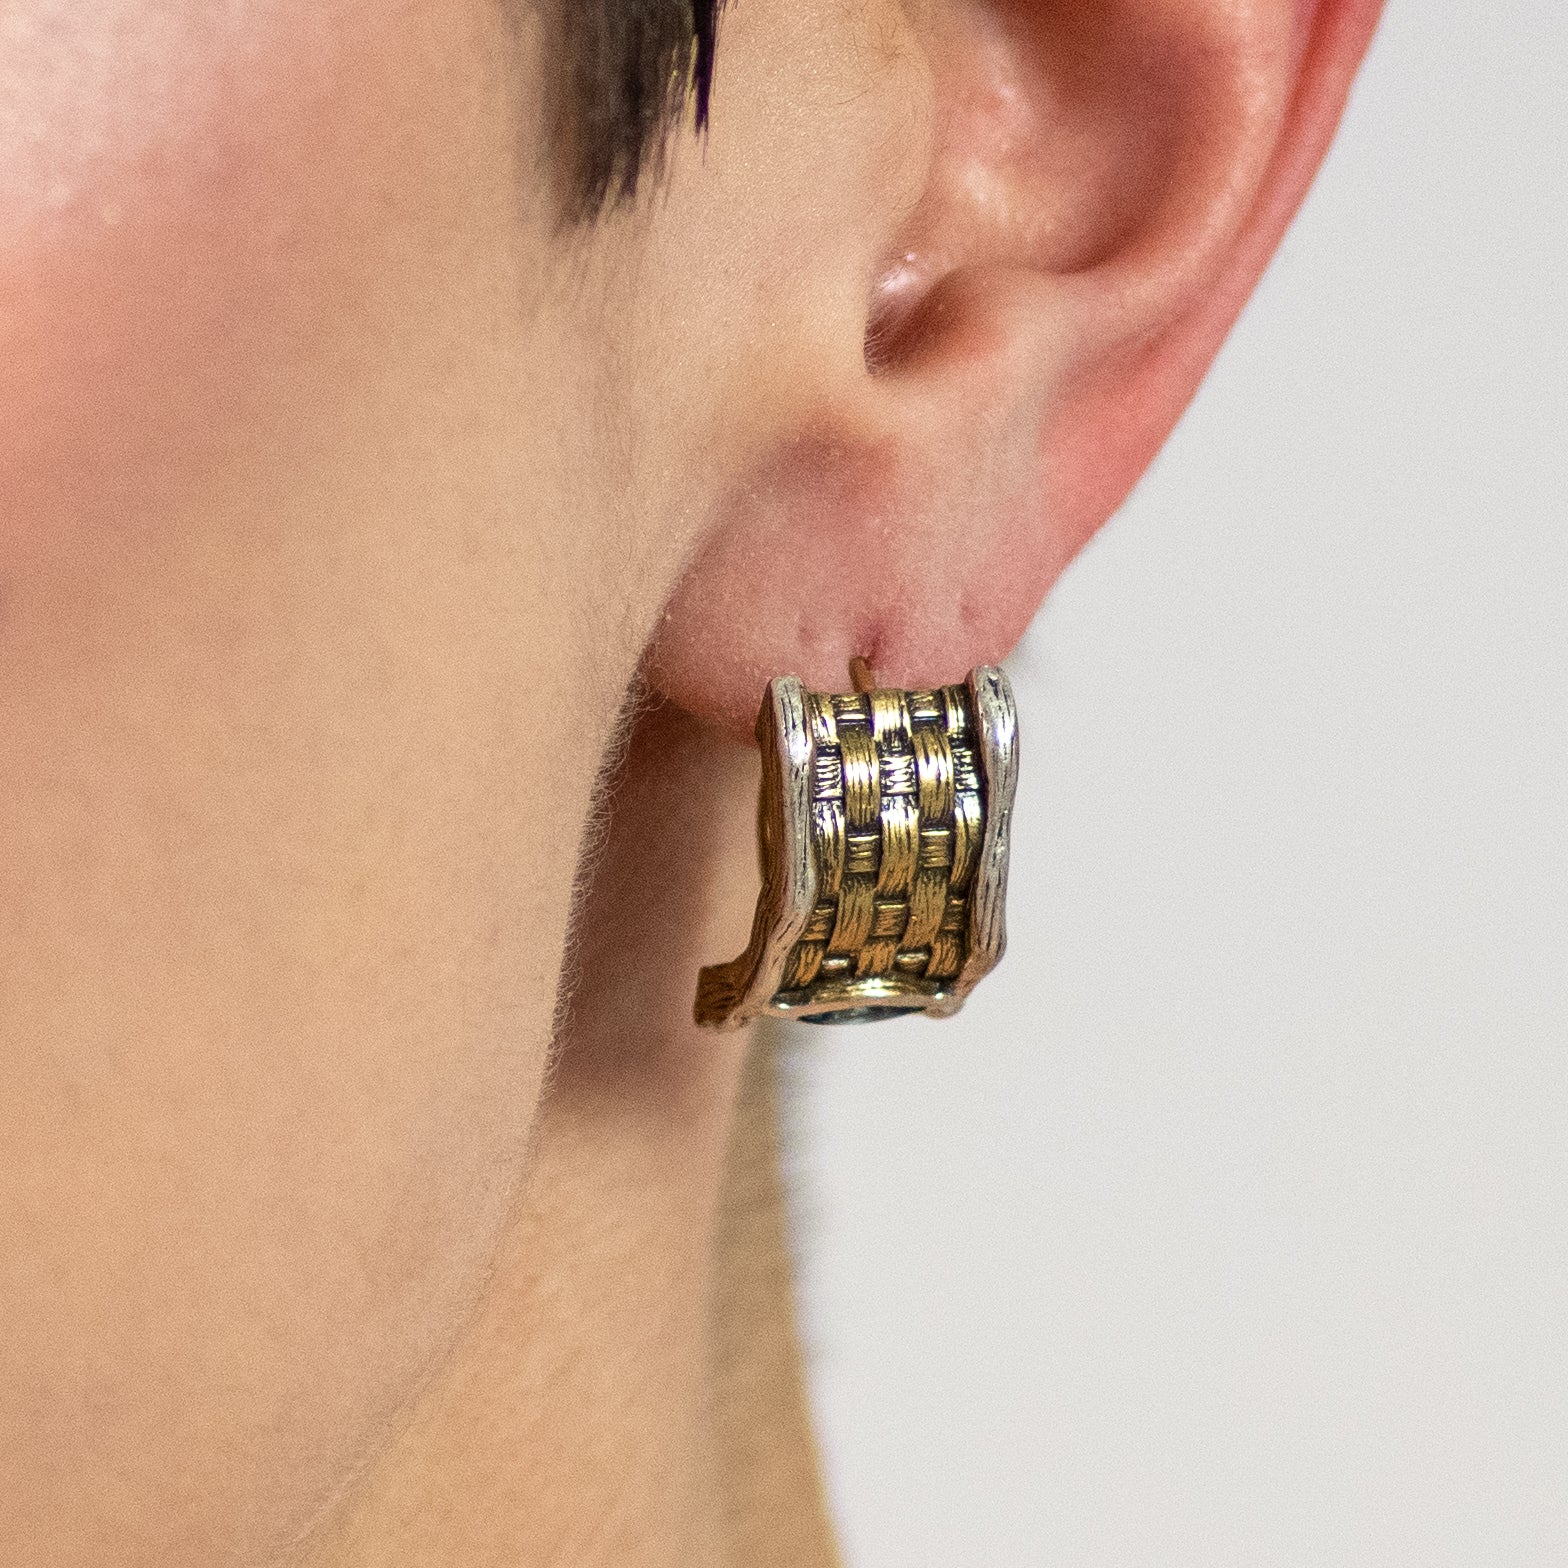 Cyane Topaz Earrings in Sterling Silver - Heron and Swan